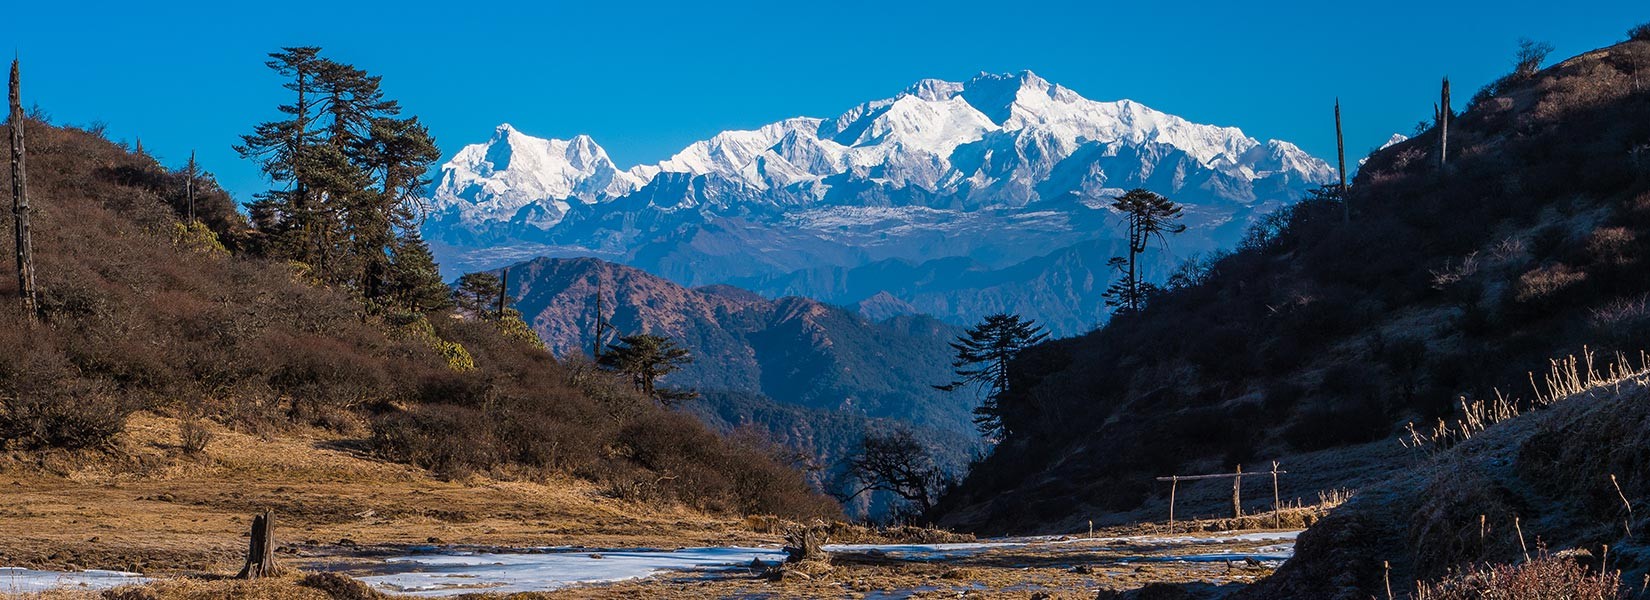 Kanchenjunga Trek - 18 Days Itinerary